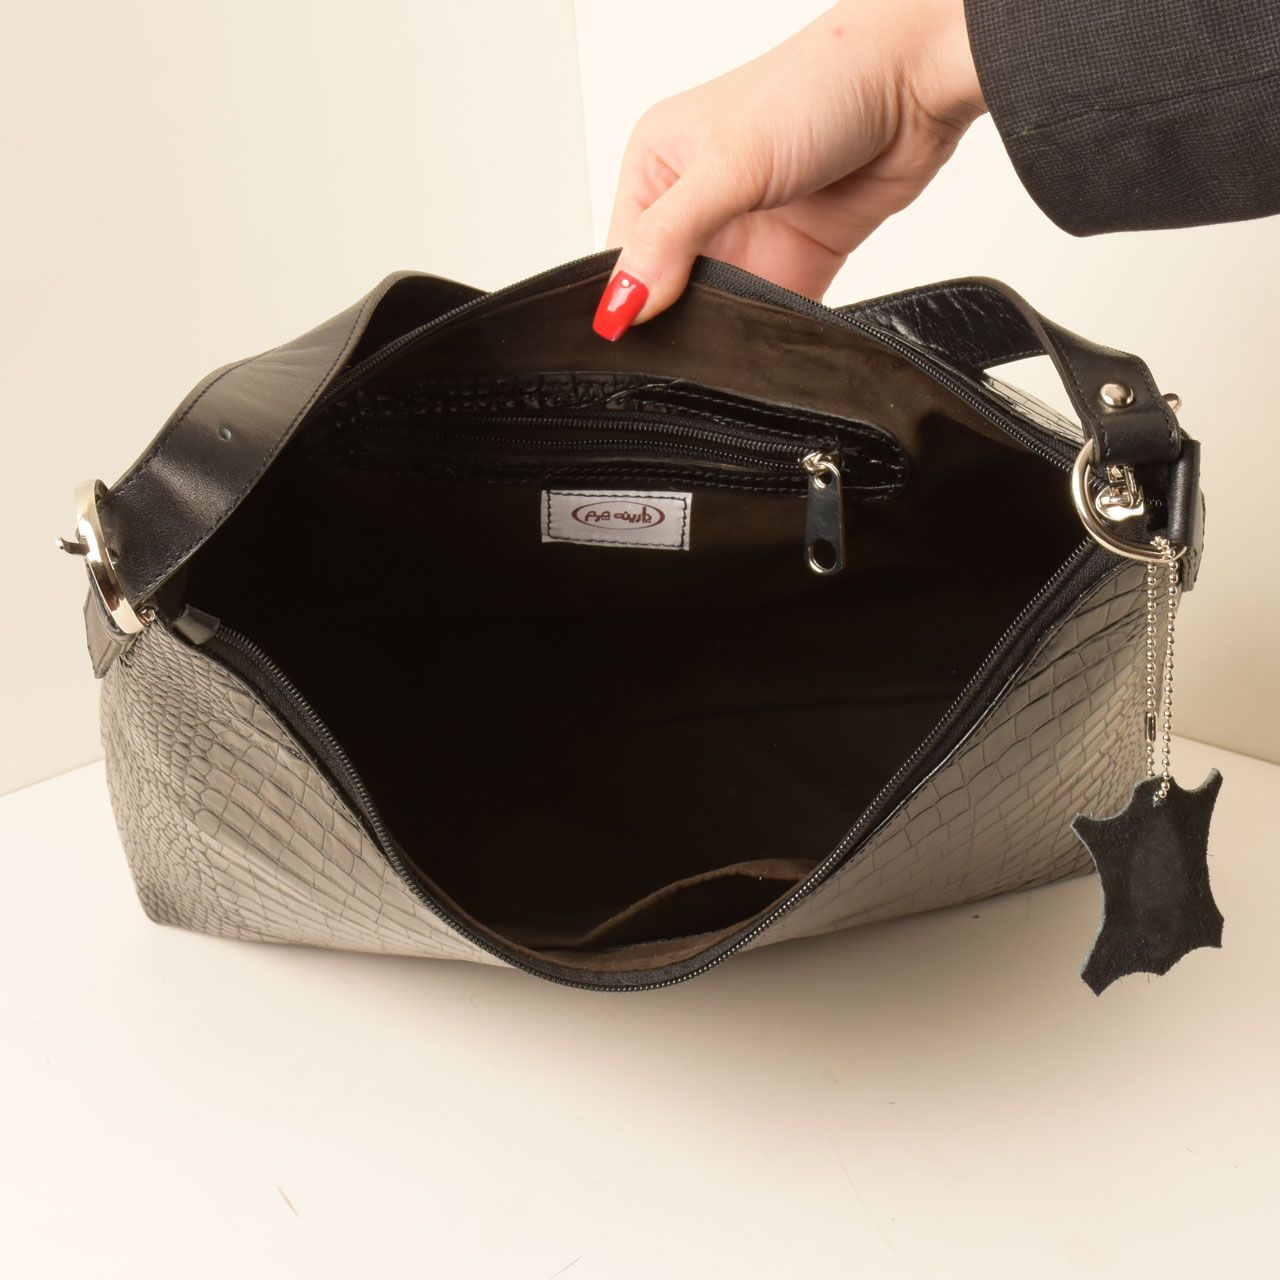  کیف دوشی زنانه پارینه چرم مدل V203-1 -  - 14